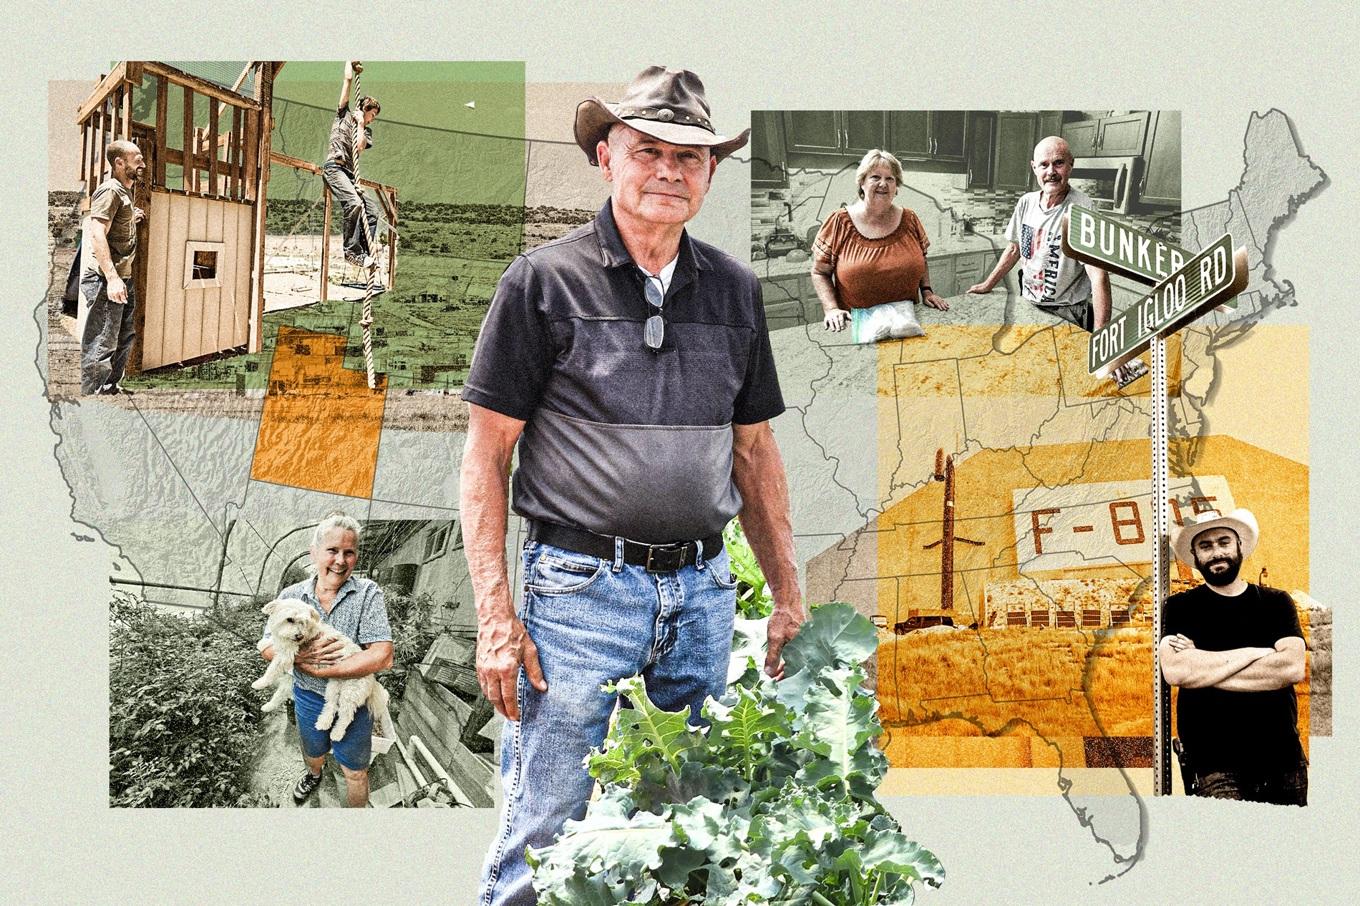 I mitten, 74-årige Phil Gleason, initiativtagare till Operation Self-Reliance, ett off-gridsamhälle som växer fram i Utahs öken.
Illustration: Shutterstock, Allan Stein